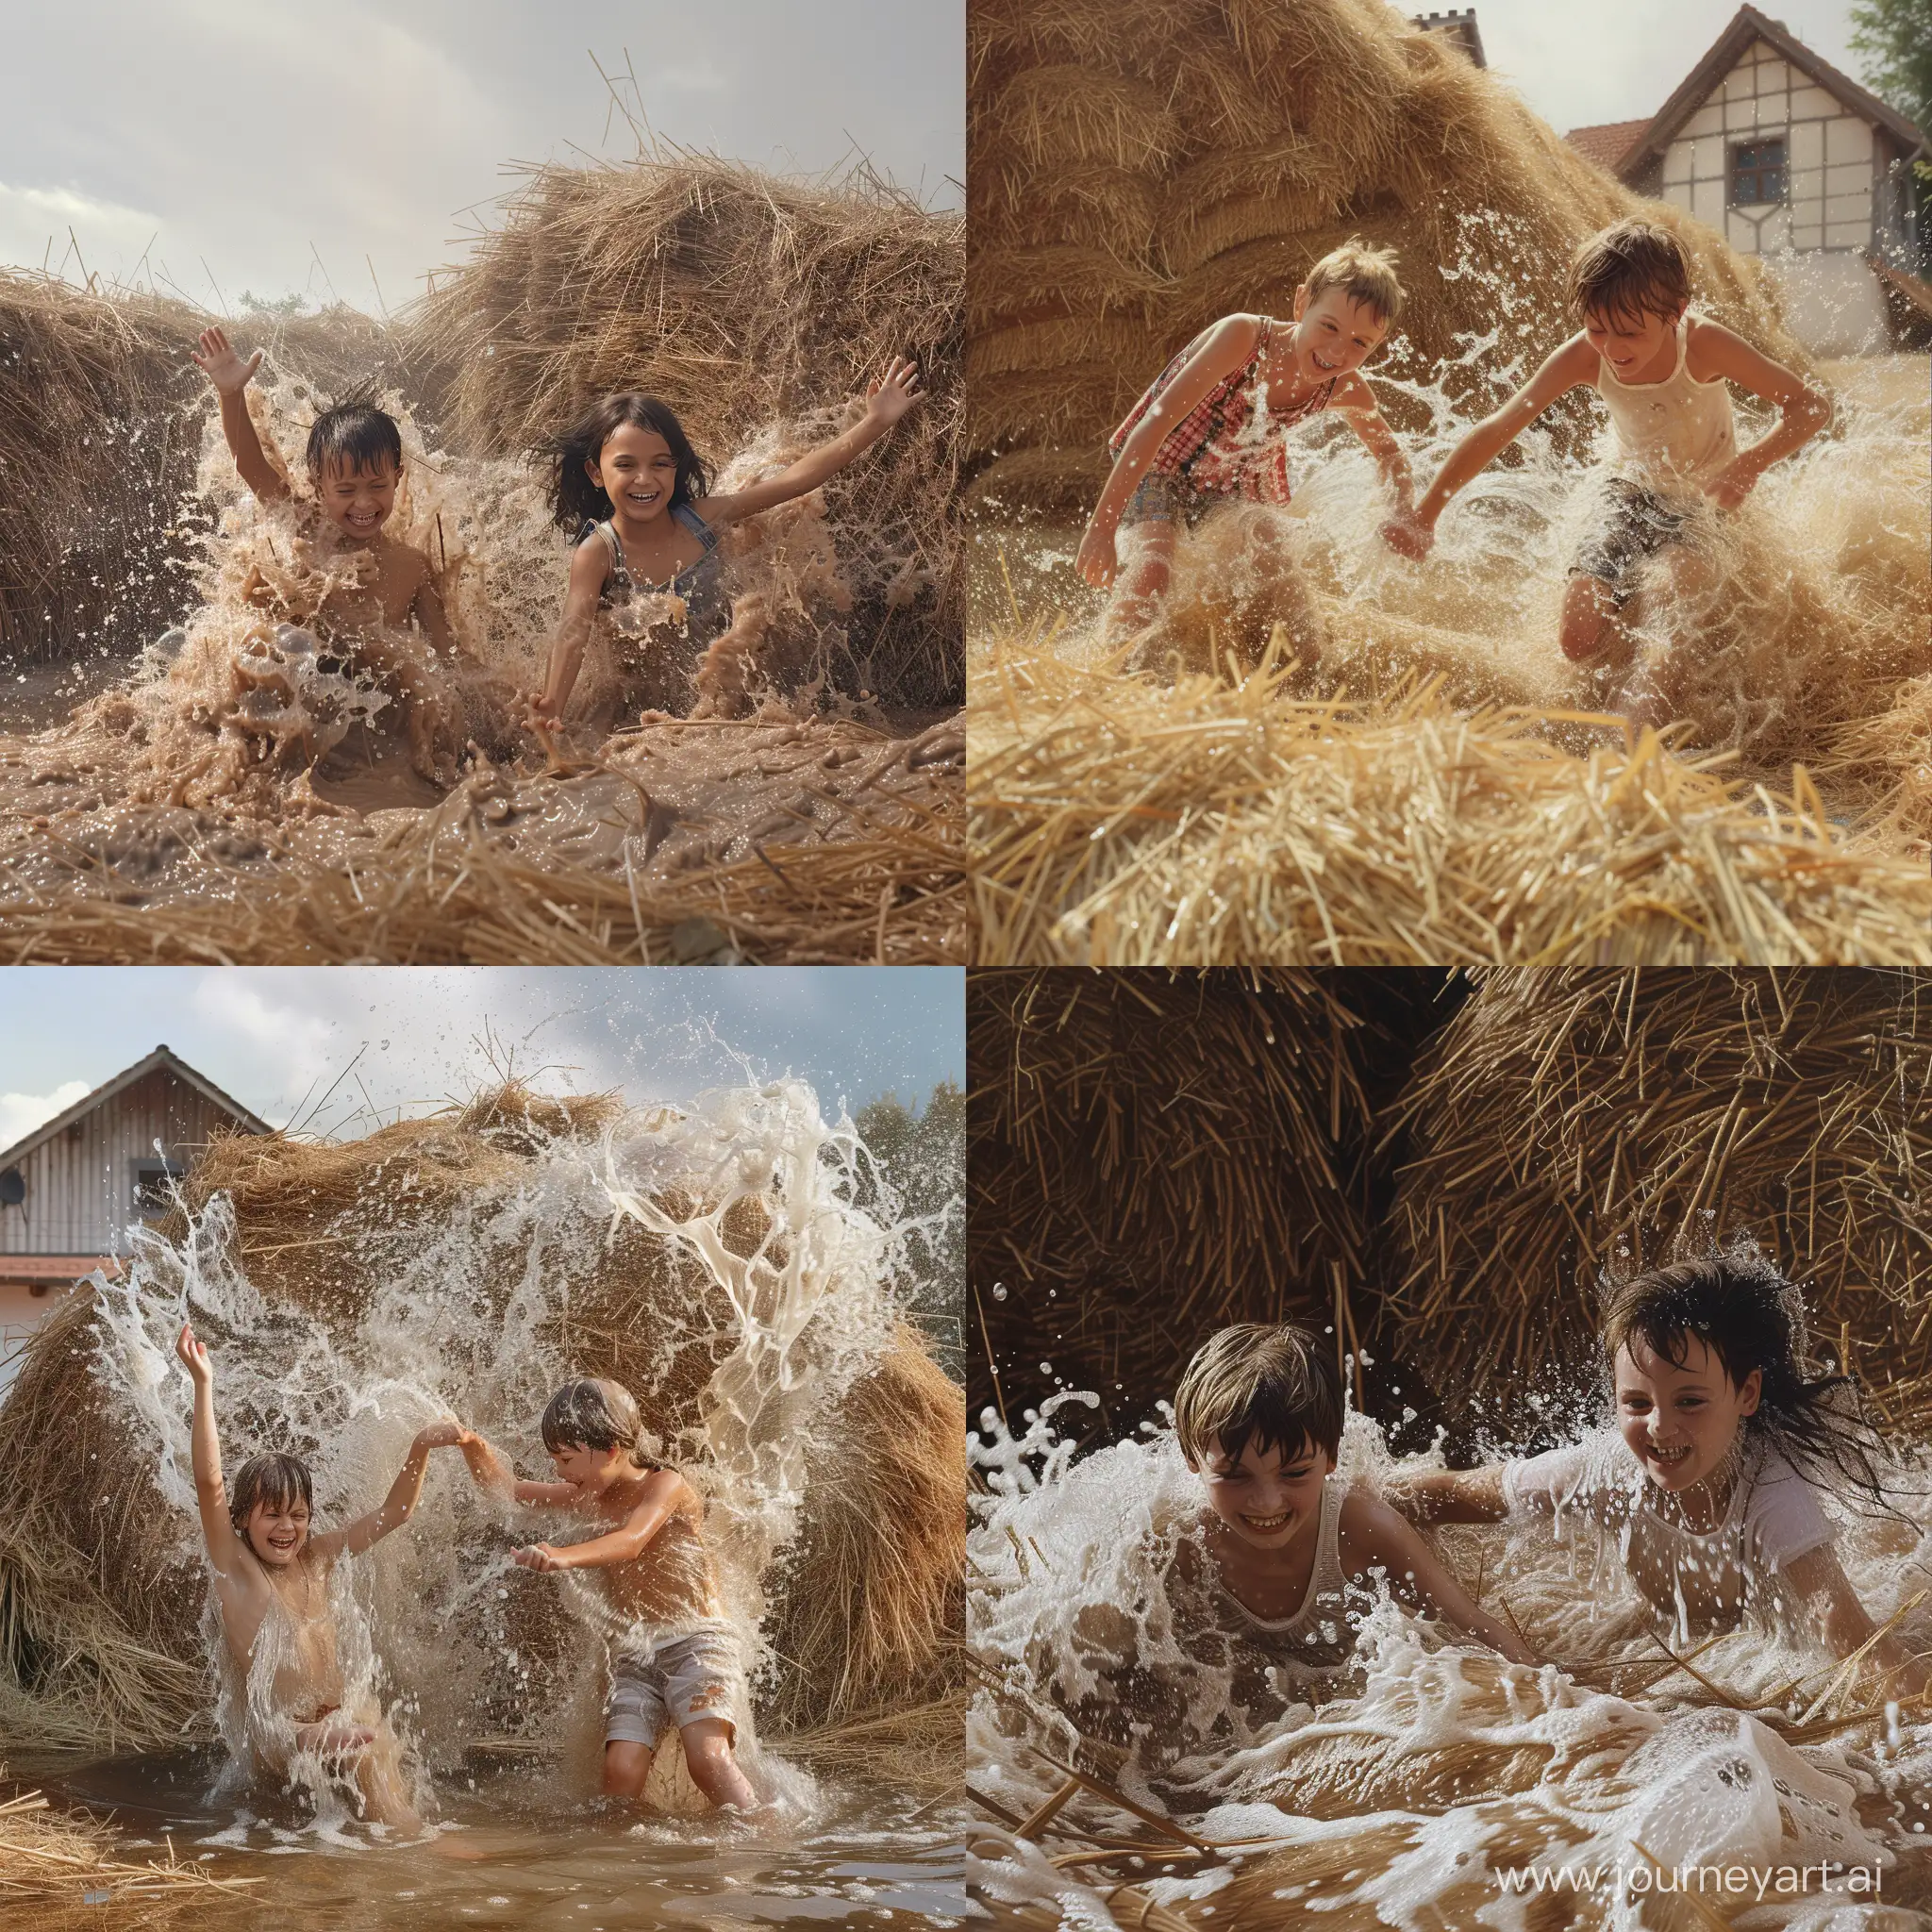 Мальчик и девочка играют, резвятся и барахтаются в огромном стоге сена в деревне, фотография, гиперреализм, высокое разрешение